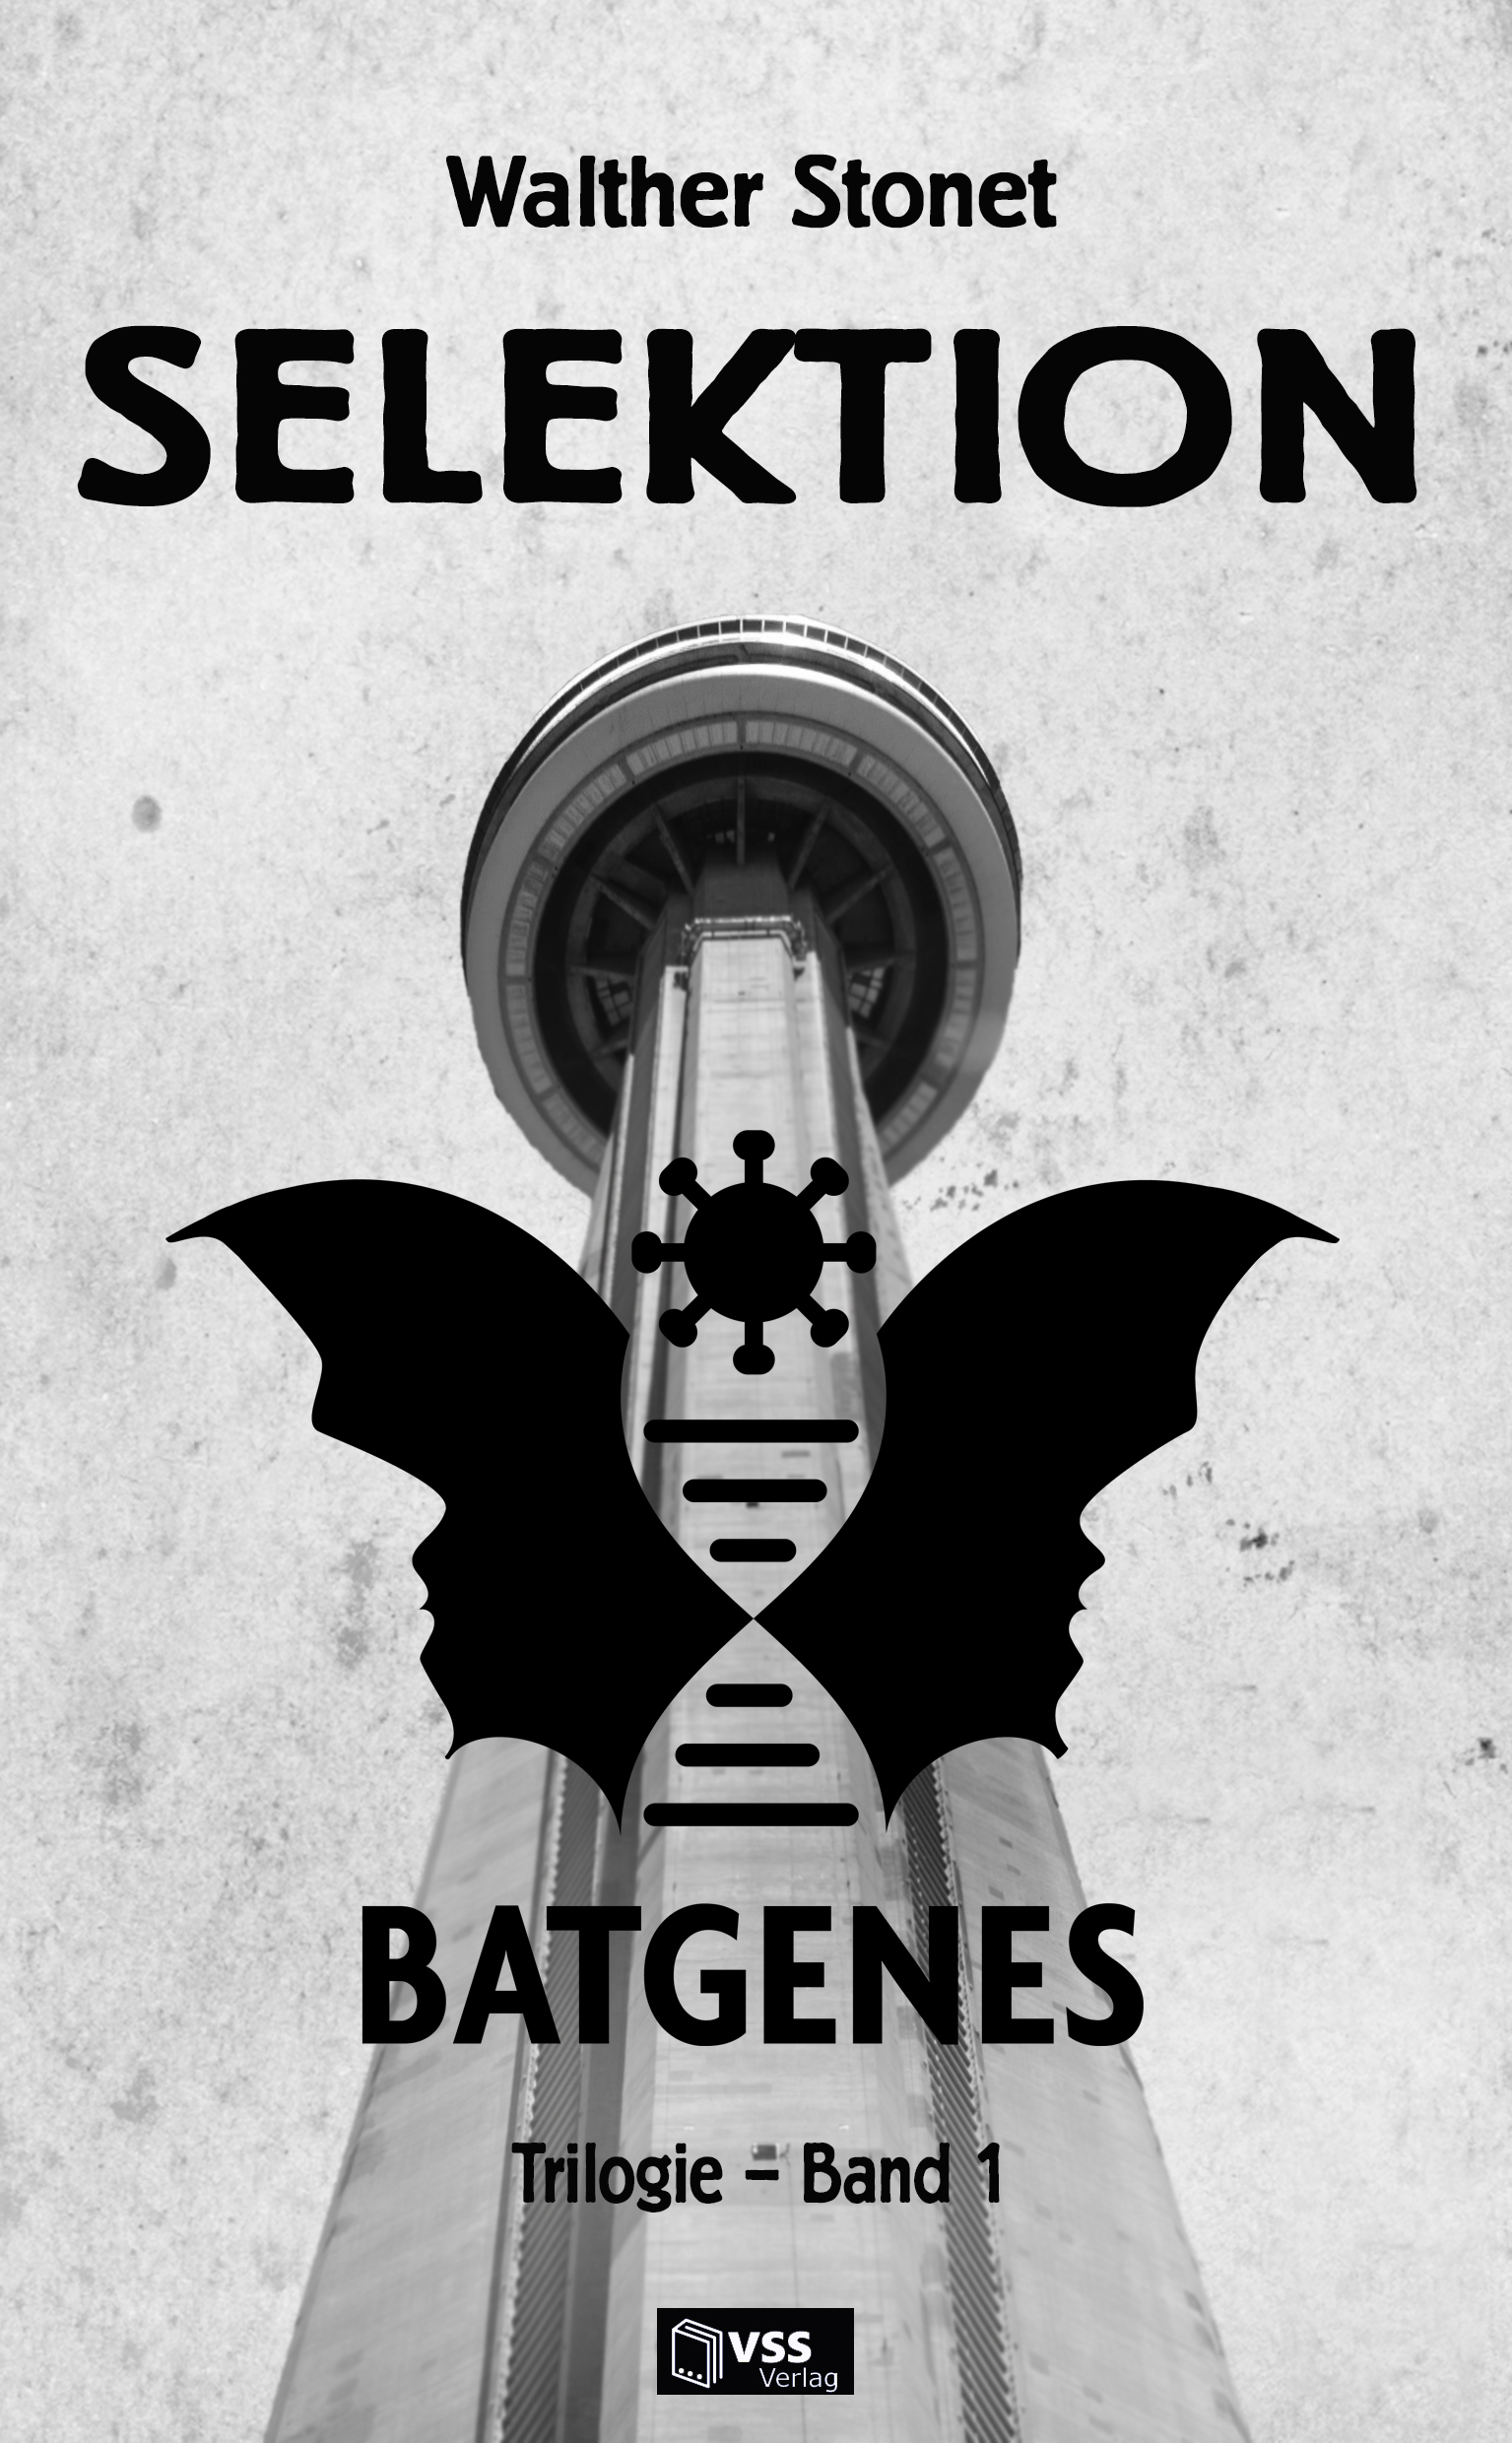 16.10.2021 – „Selektion – Band 1 der batgenes-Trilogie“ kann offziell bestellt werden!